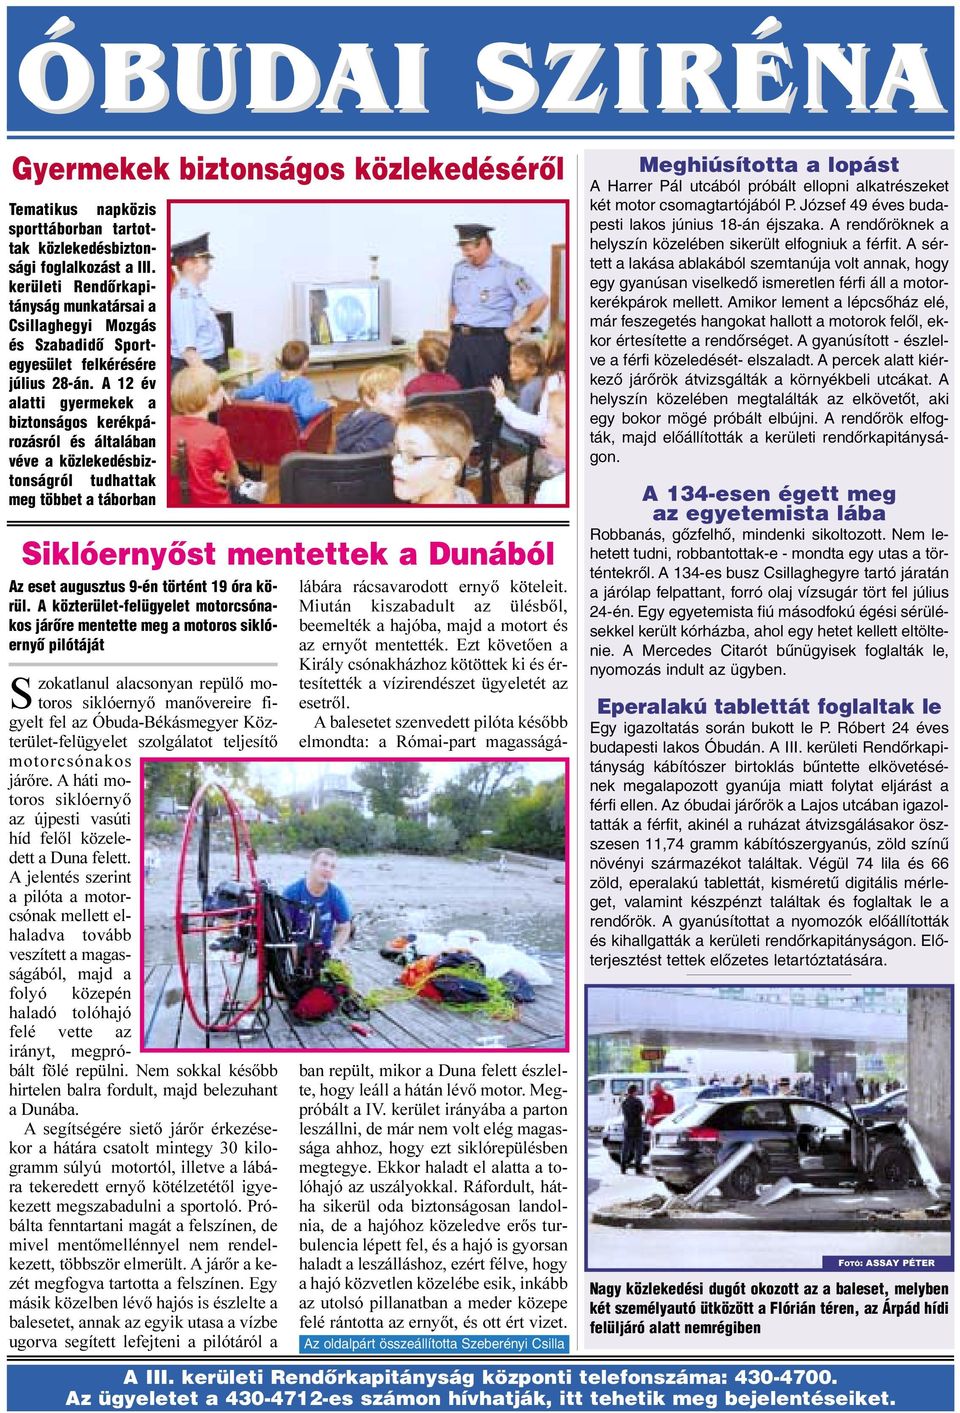 A 12 év alatti gyermekek a biztonságos kerékpározásról és általában véve a közlekedésbiztonságról tudhattak meg többet a táborban Siklóernyõst mentettek a Dunából Az eset augusztus 9-én történt 19